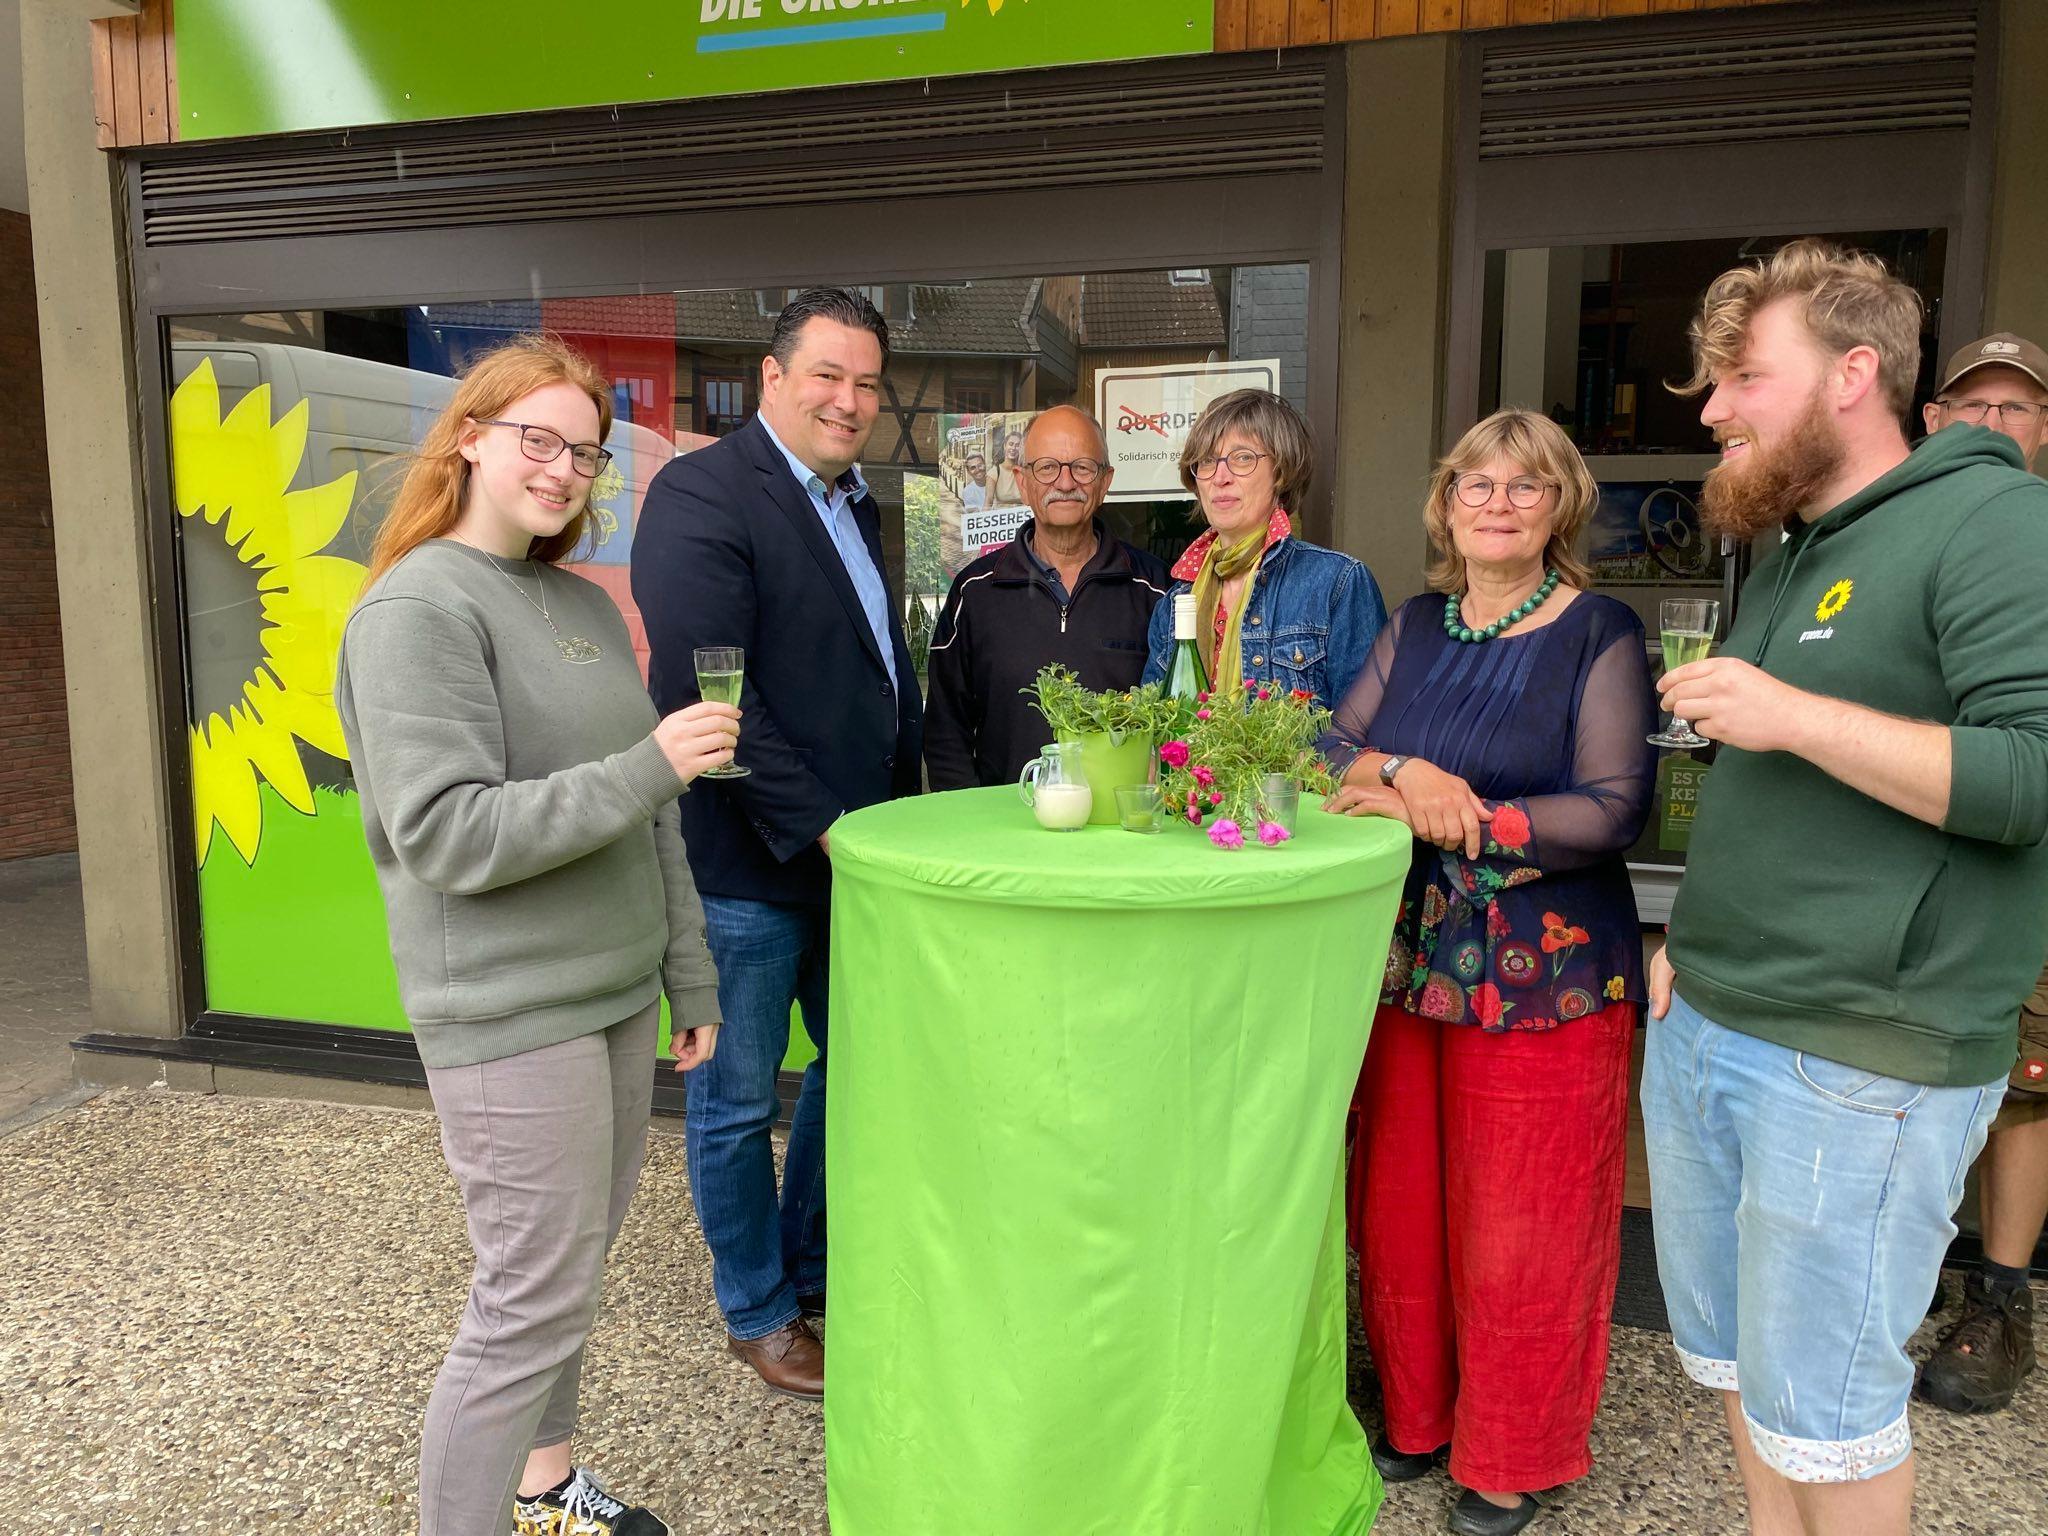 Mitglieder der Grünen und der Grünen Jugend zusammen mit Landrat Heilmann vor der Grünen Geschäftsstelle in Gifhorn. Sie trinken grüne Maibowle und stehen um einen grünen Tisch.